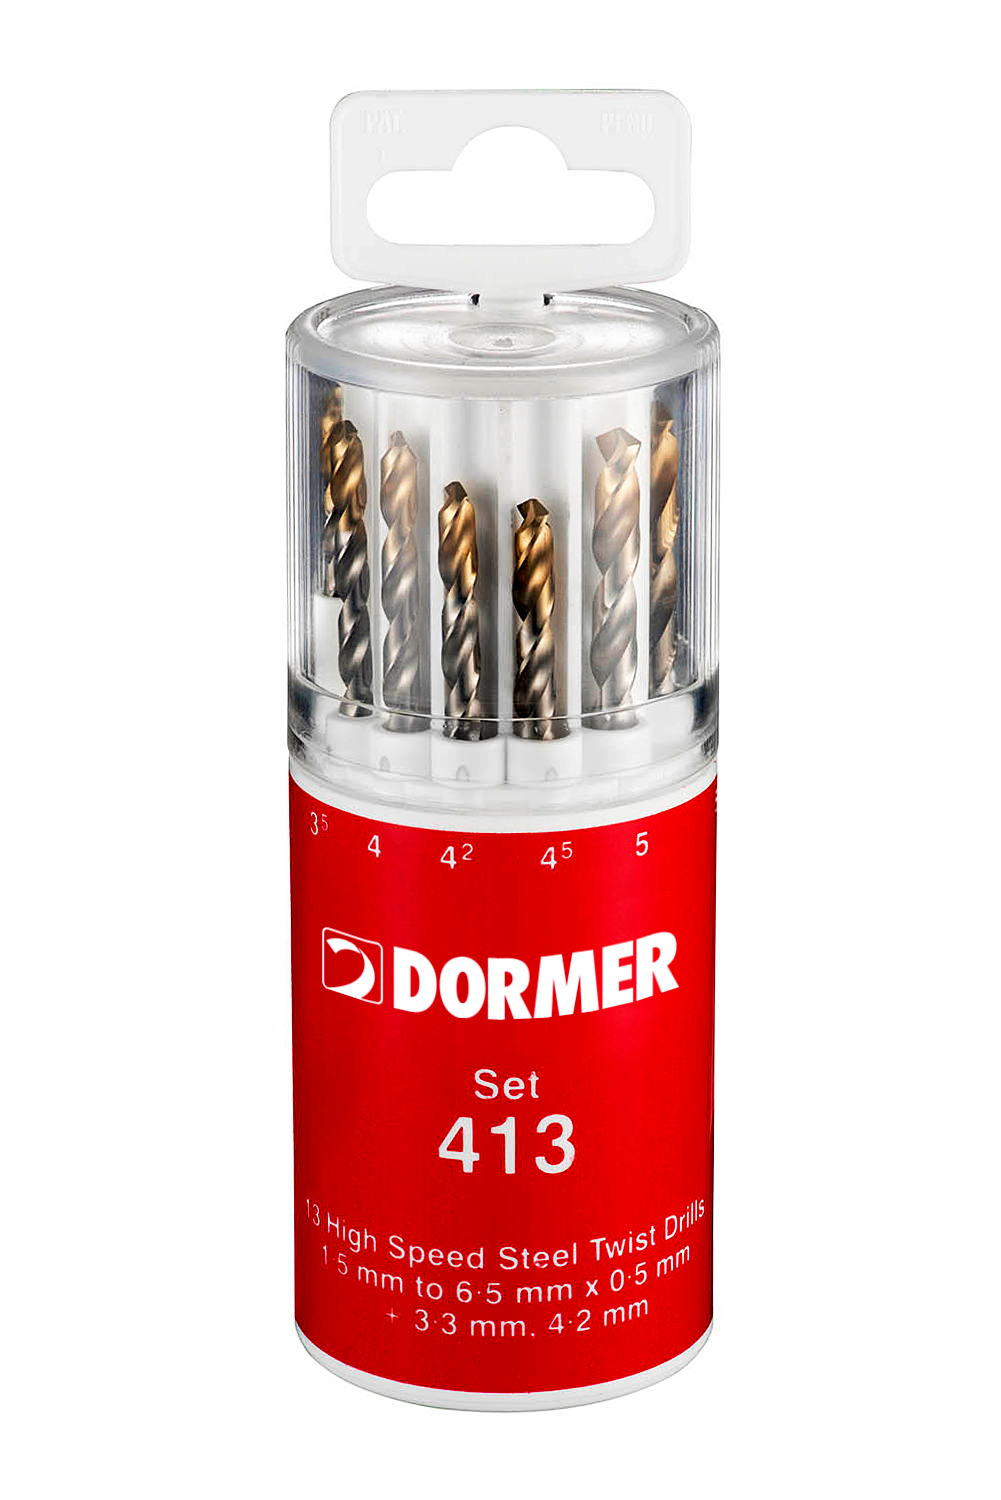 Dormer - A094 HSS TiN Straight Shank Jobber Drill Set Plastic Case Set 413 (A002 x 13)